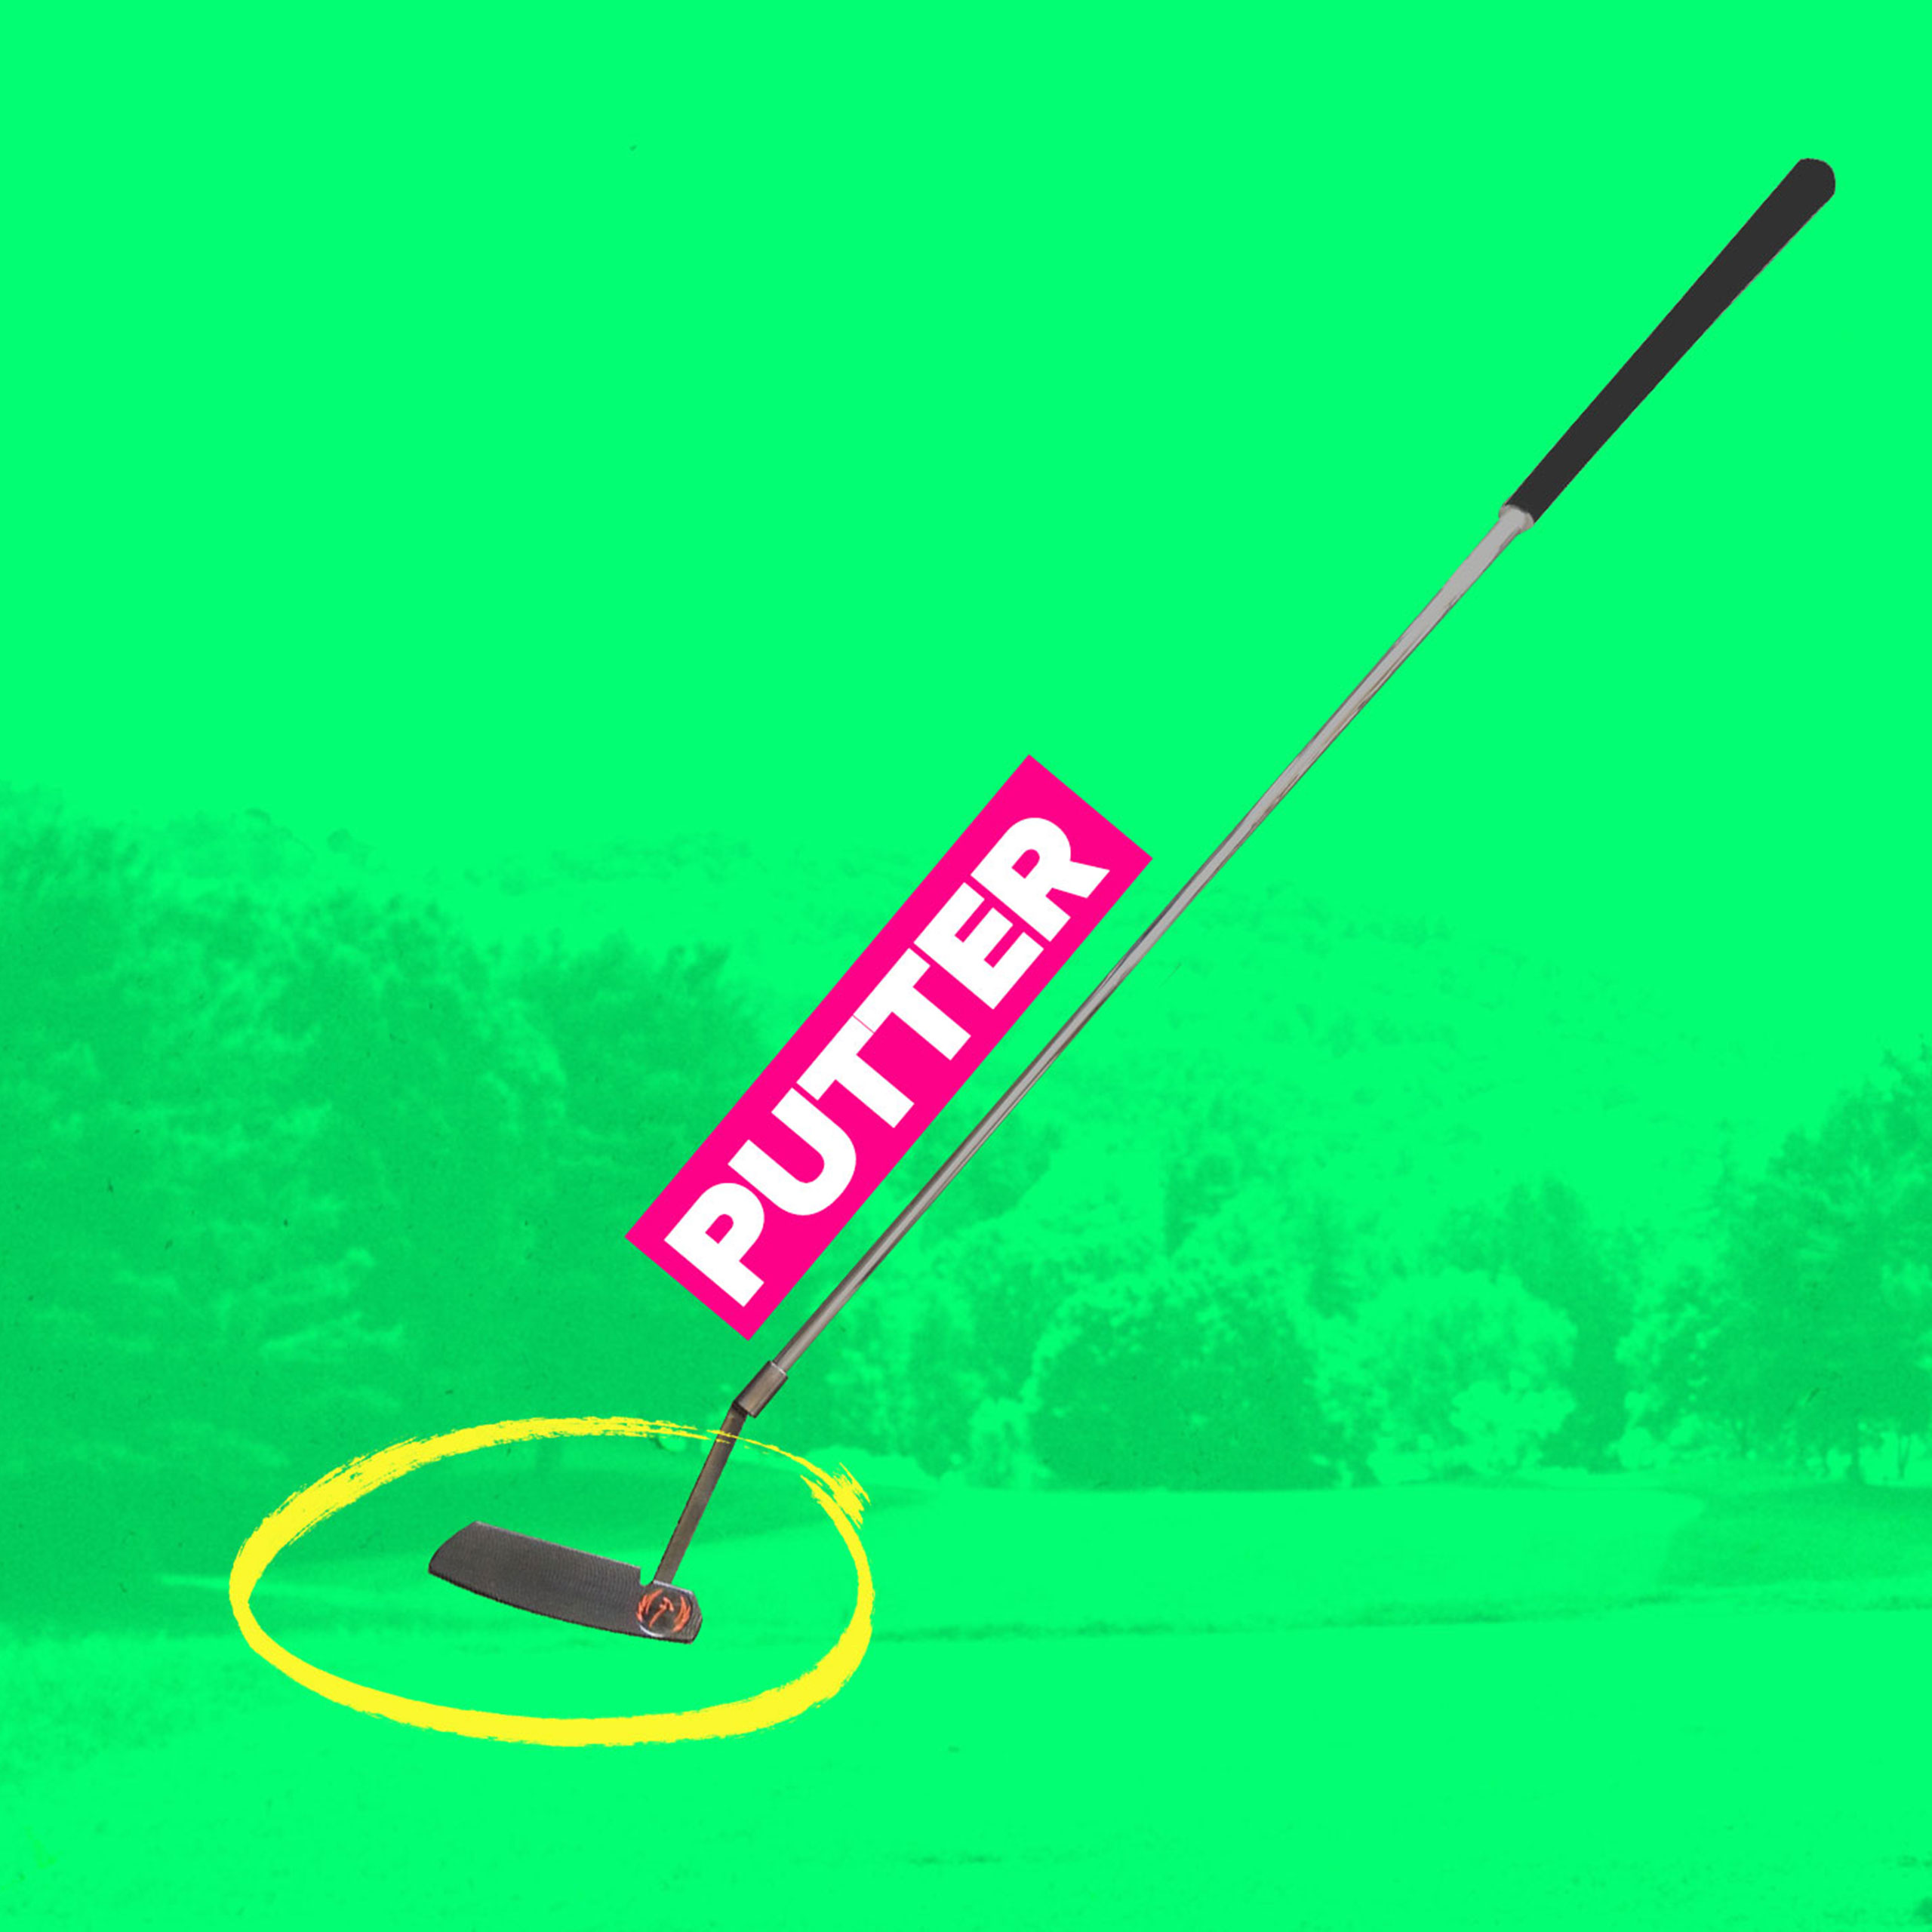 Putter golf club